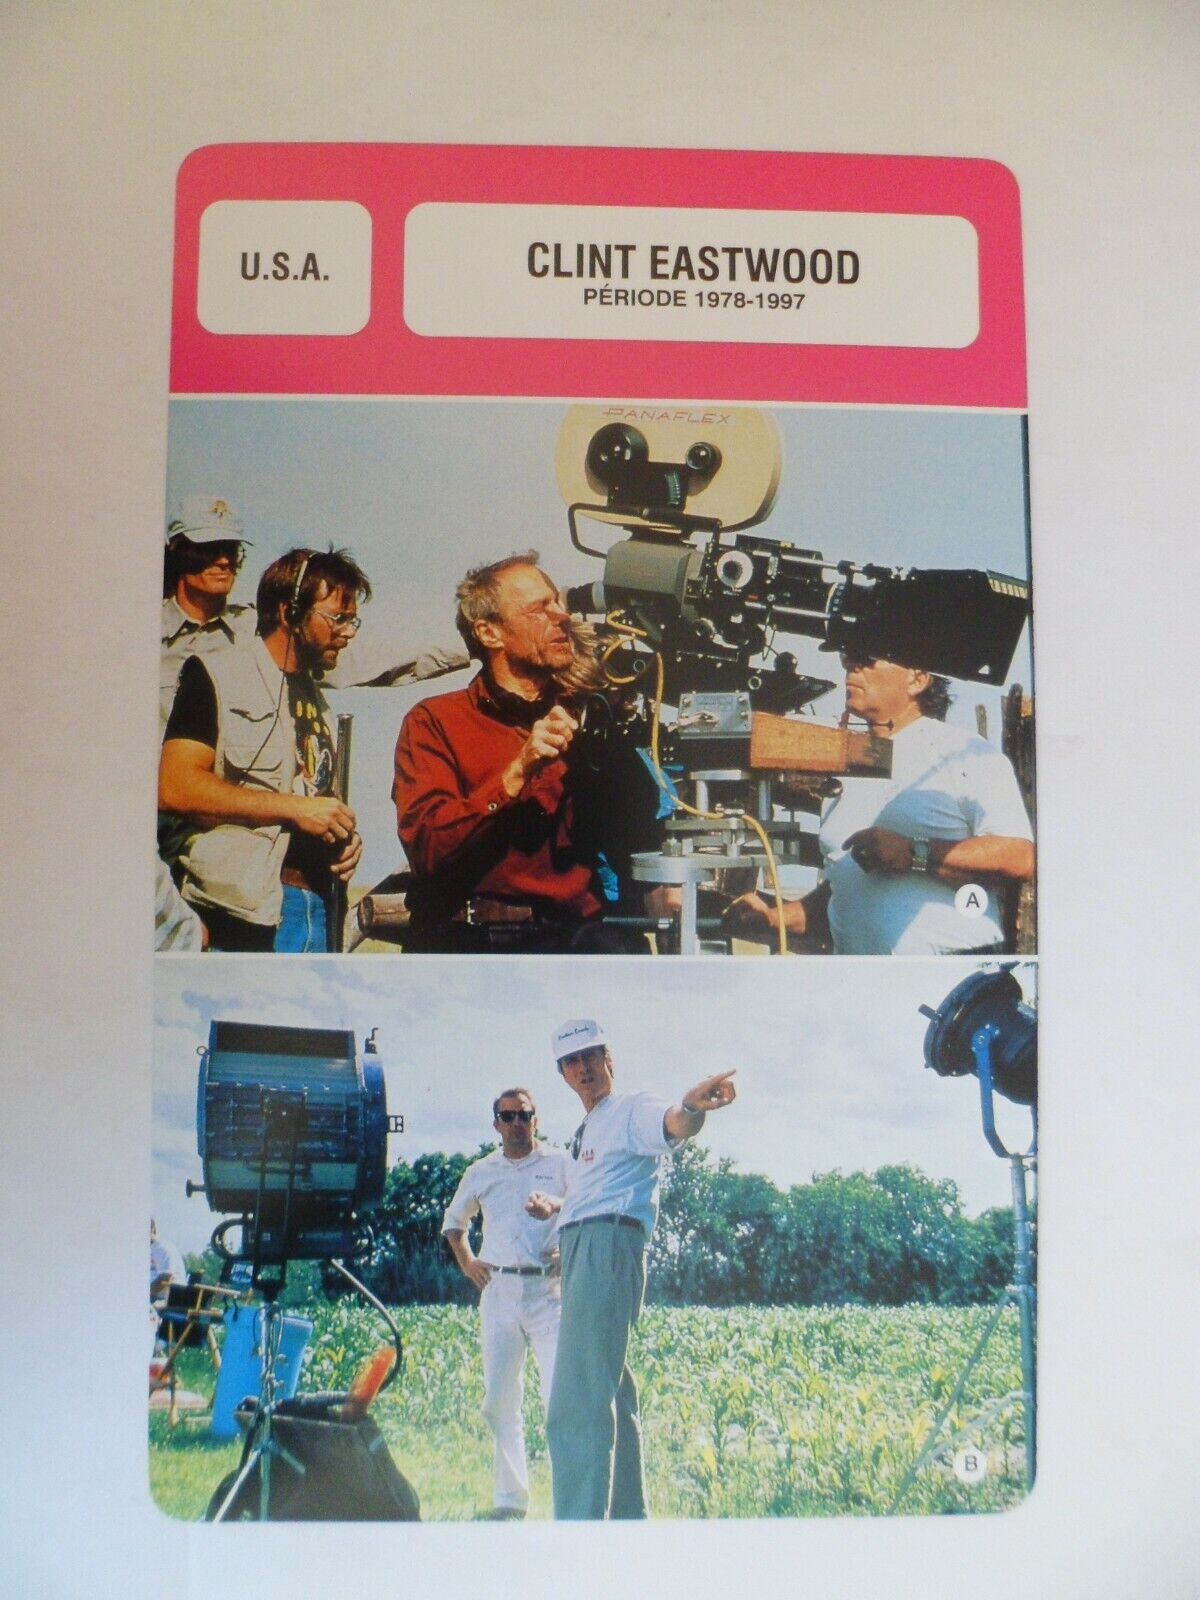 CARTE FICHE CINEMA   CLINT EASTWOOD PERIODE 1978-1997